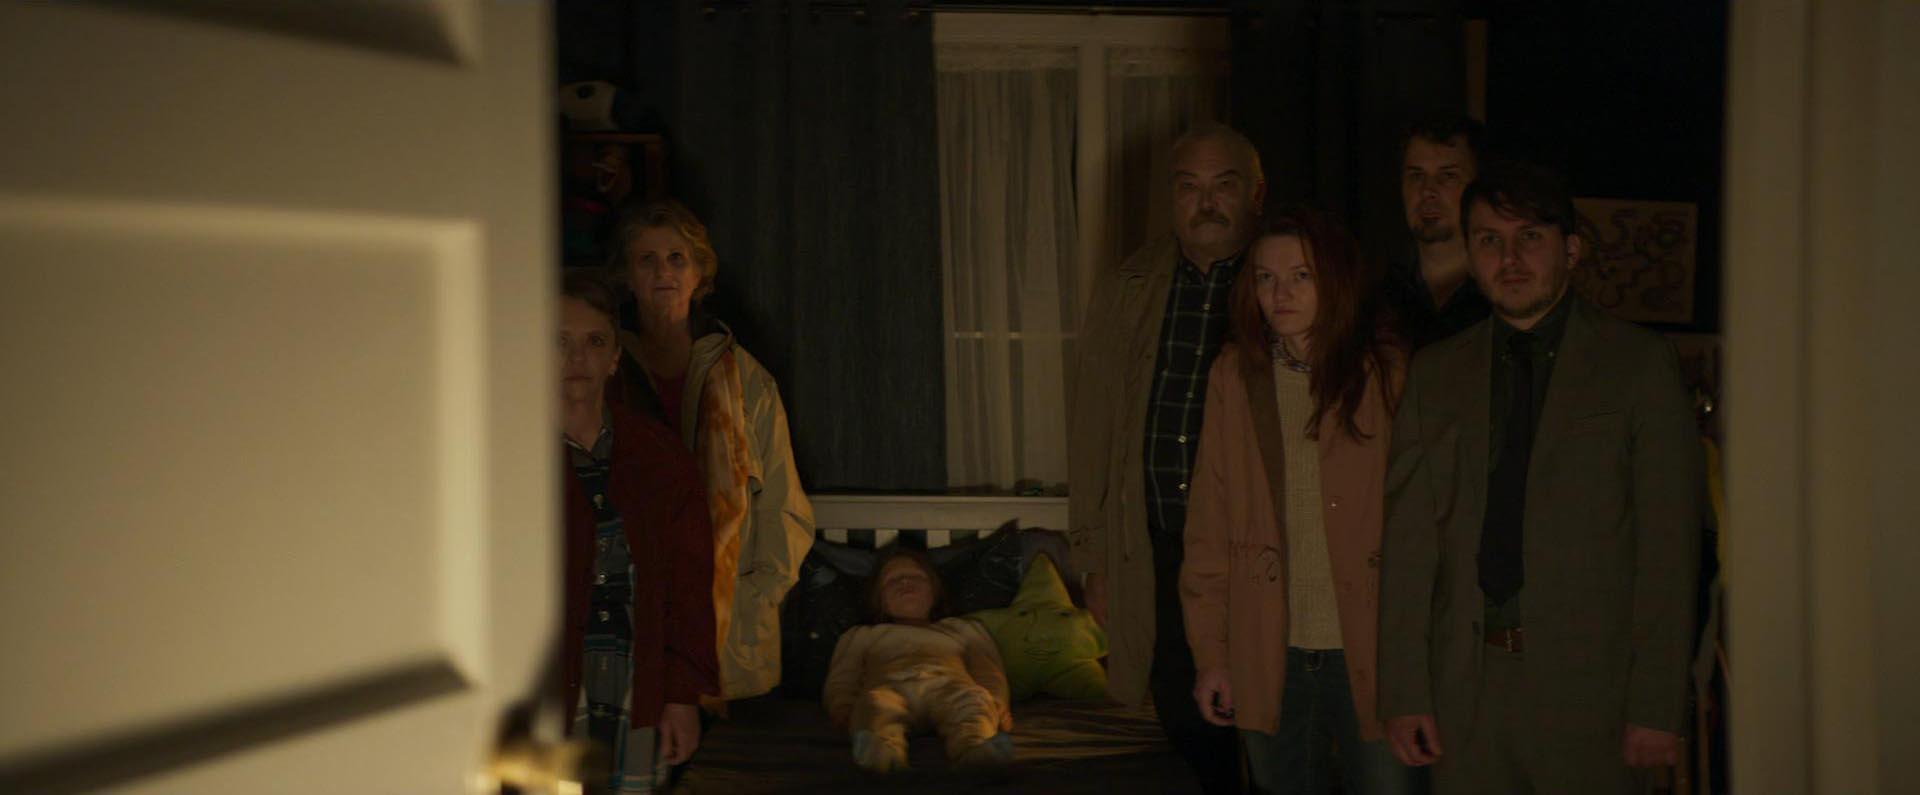 آدم‌های بیگانه در اتاق خواب لوک دیوید بلام در نمایی از فیلم Son